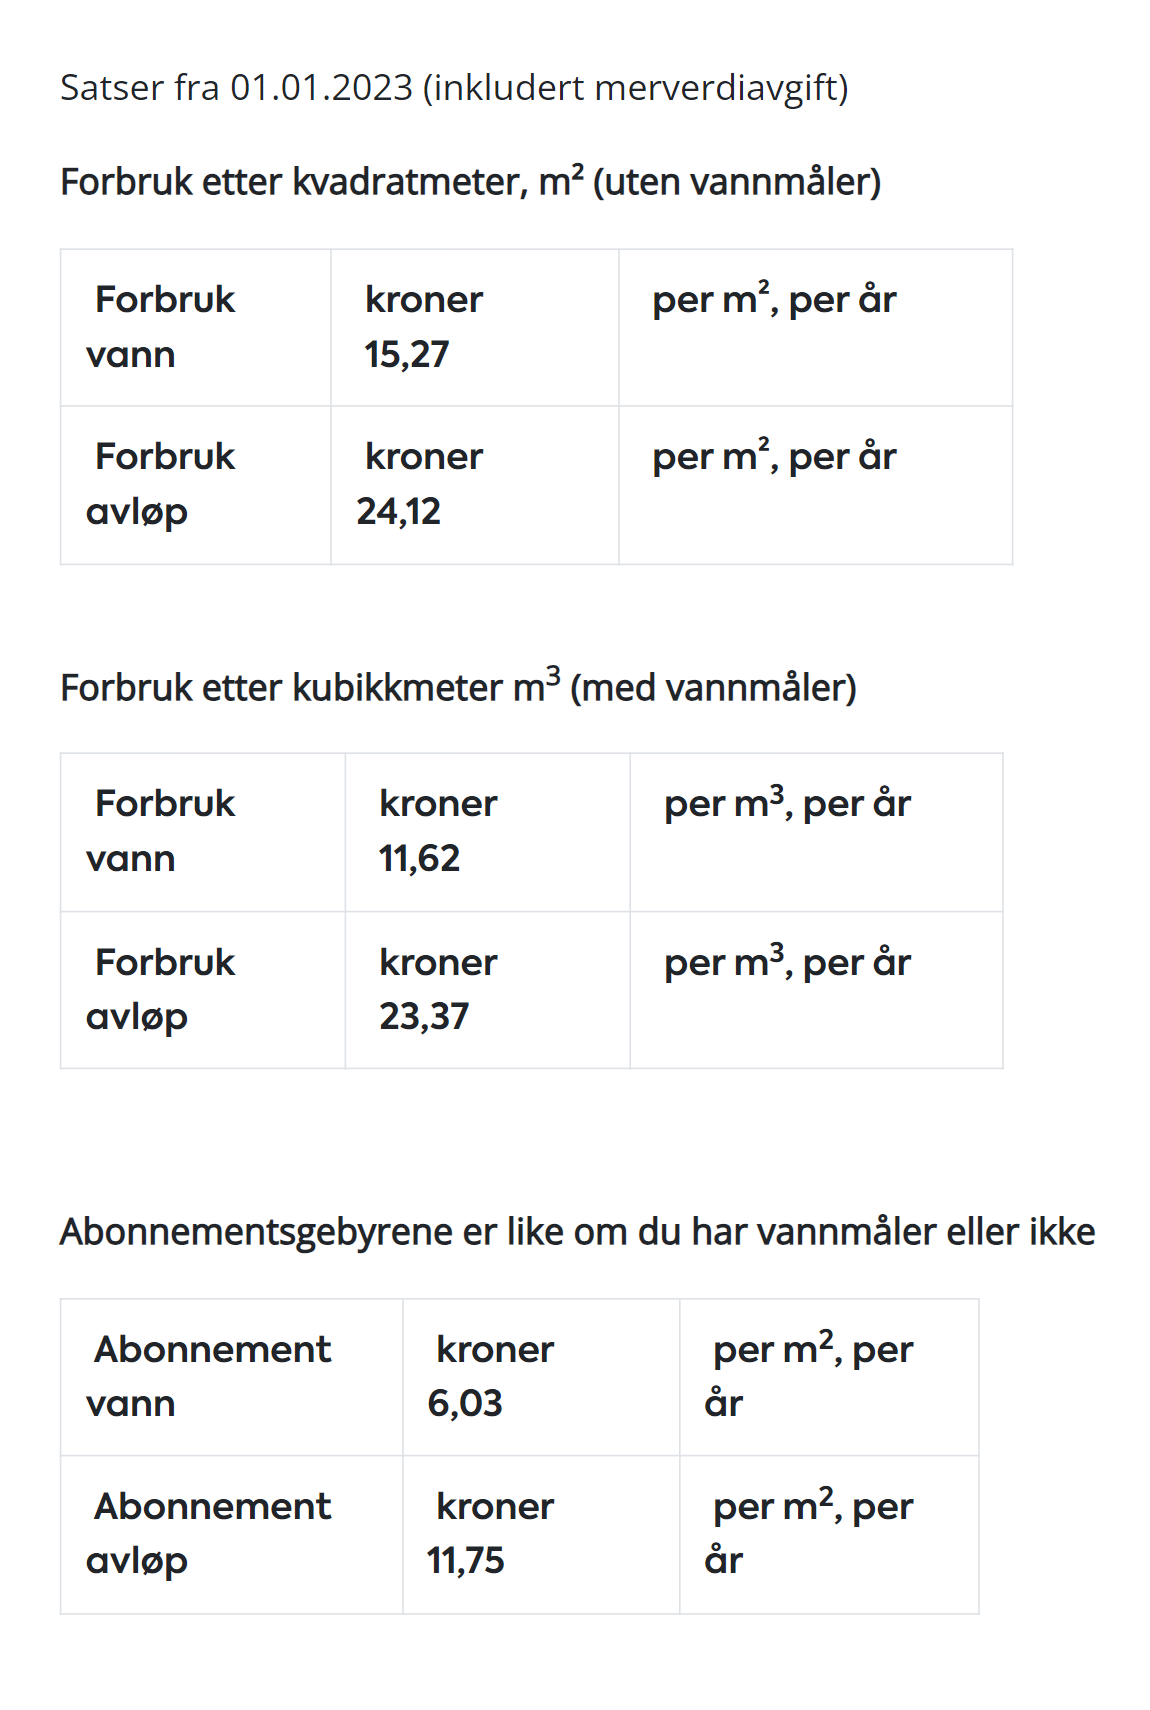 Тарифы на воду и канализацию для Саннес⁠-⁠коммуны, где мы живем. Источник: sandnes.kommune.no